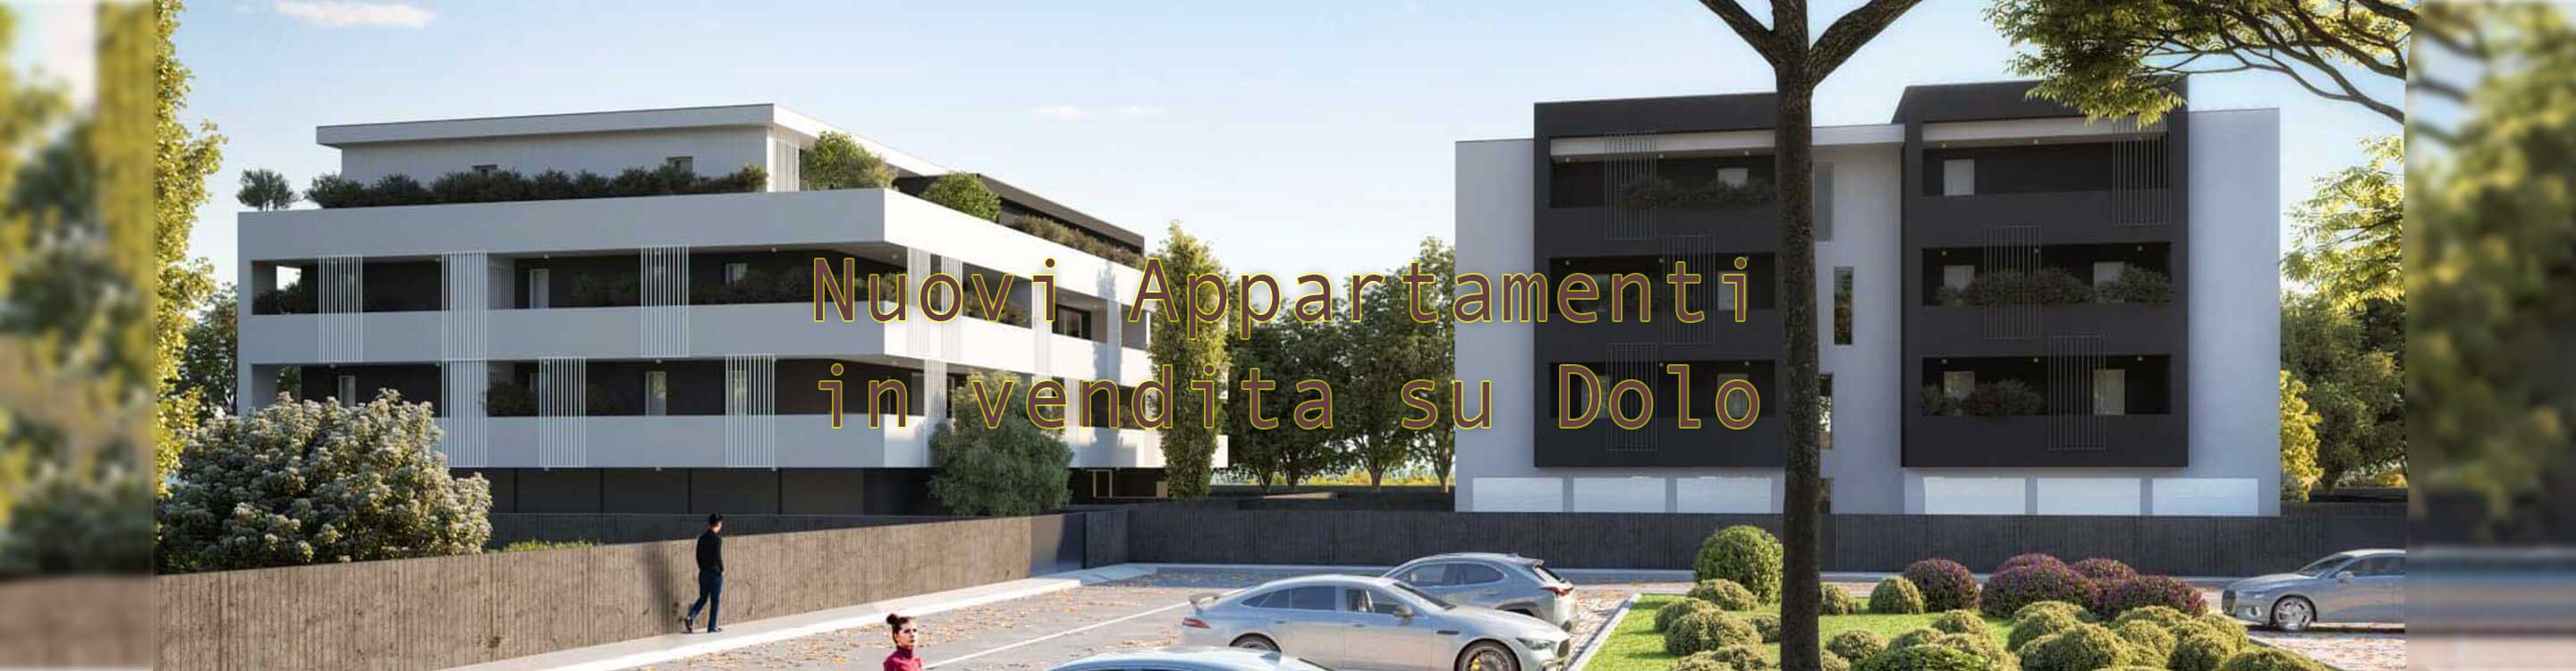 Nuovi Appartamenti con terrazze abitabili in vendita a Dolo